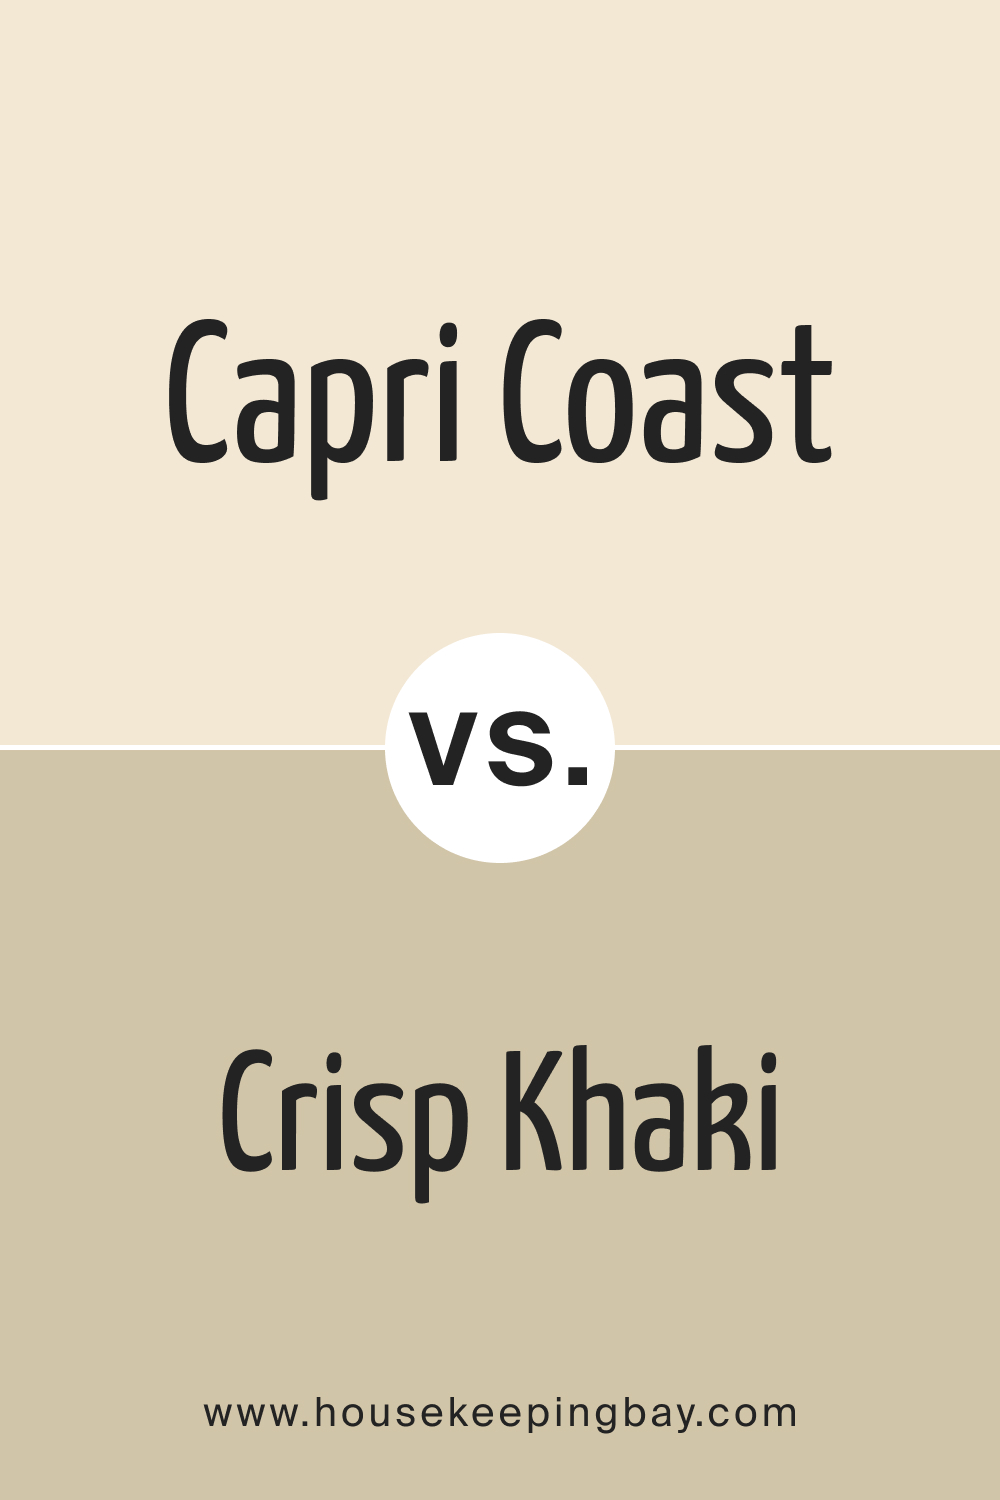 Capri Coast OC 87 vs. BM Crisp Khaki 234